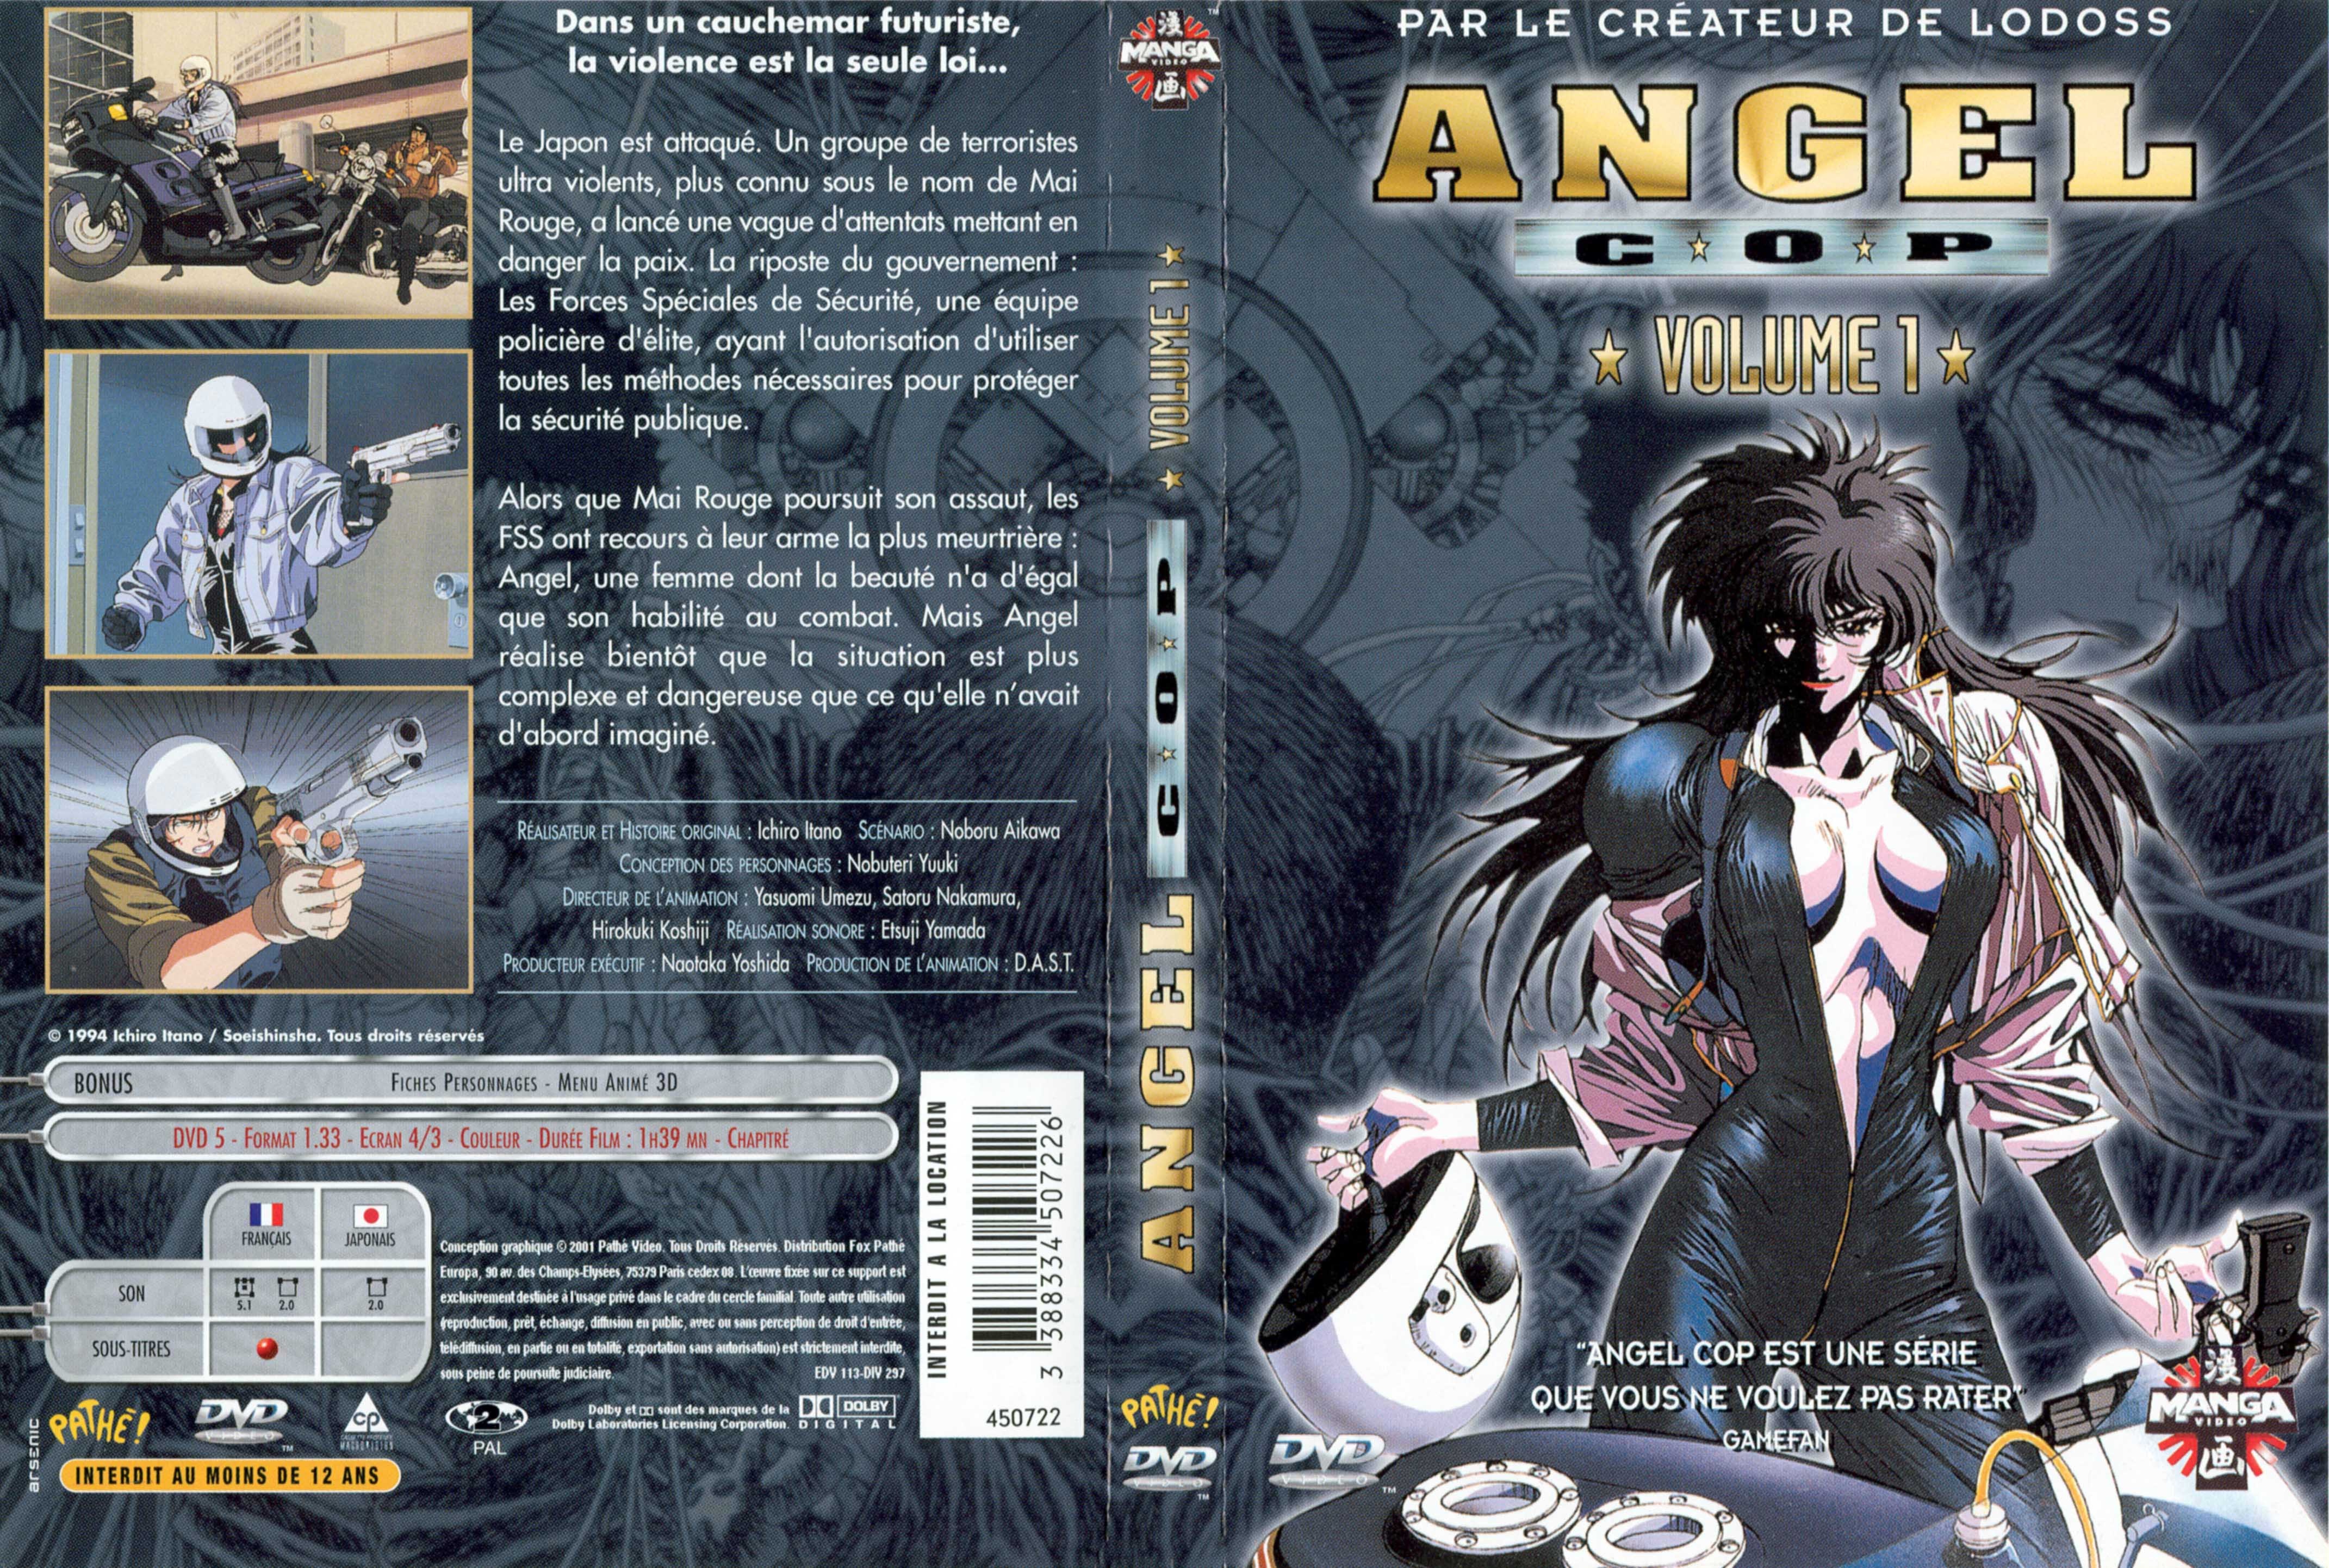 Jaquette DVD Angel cop vol 1